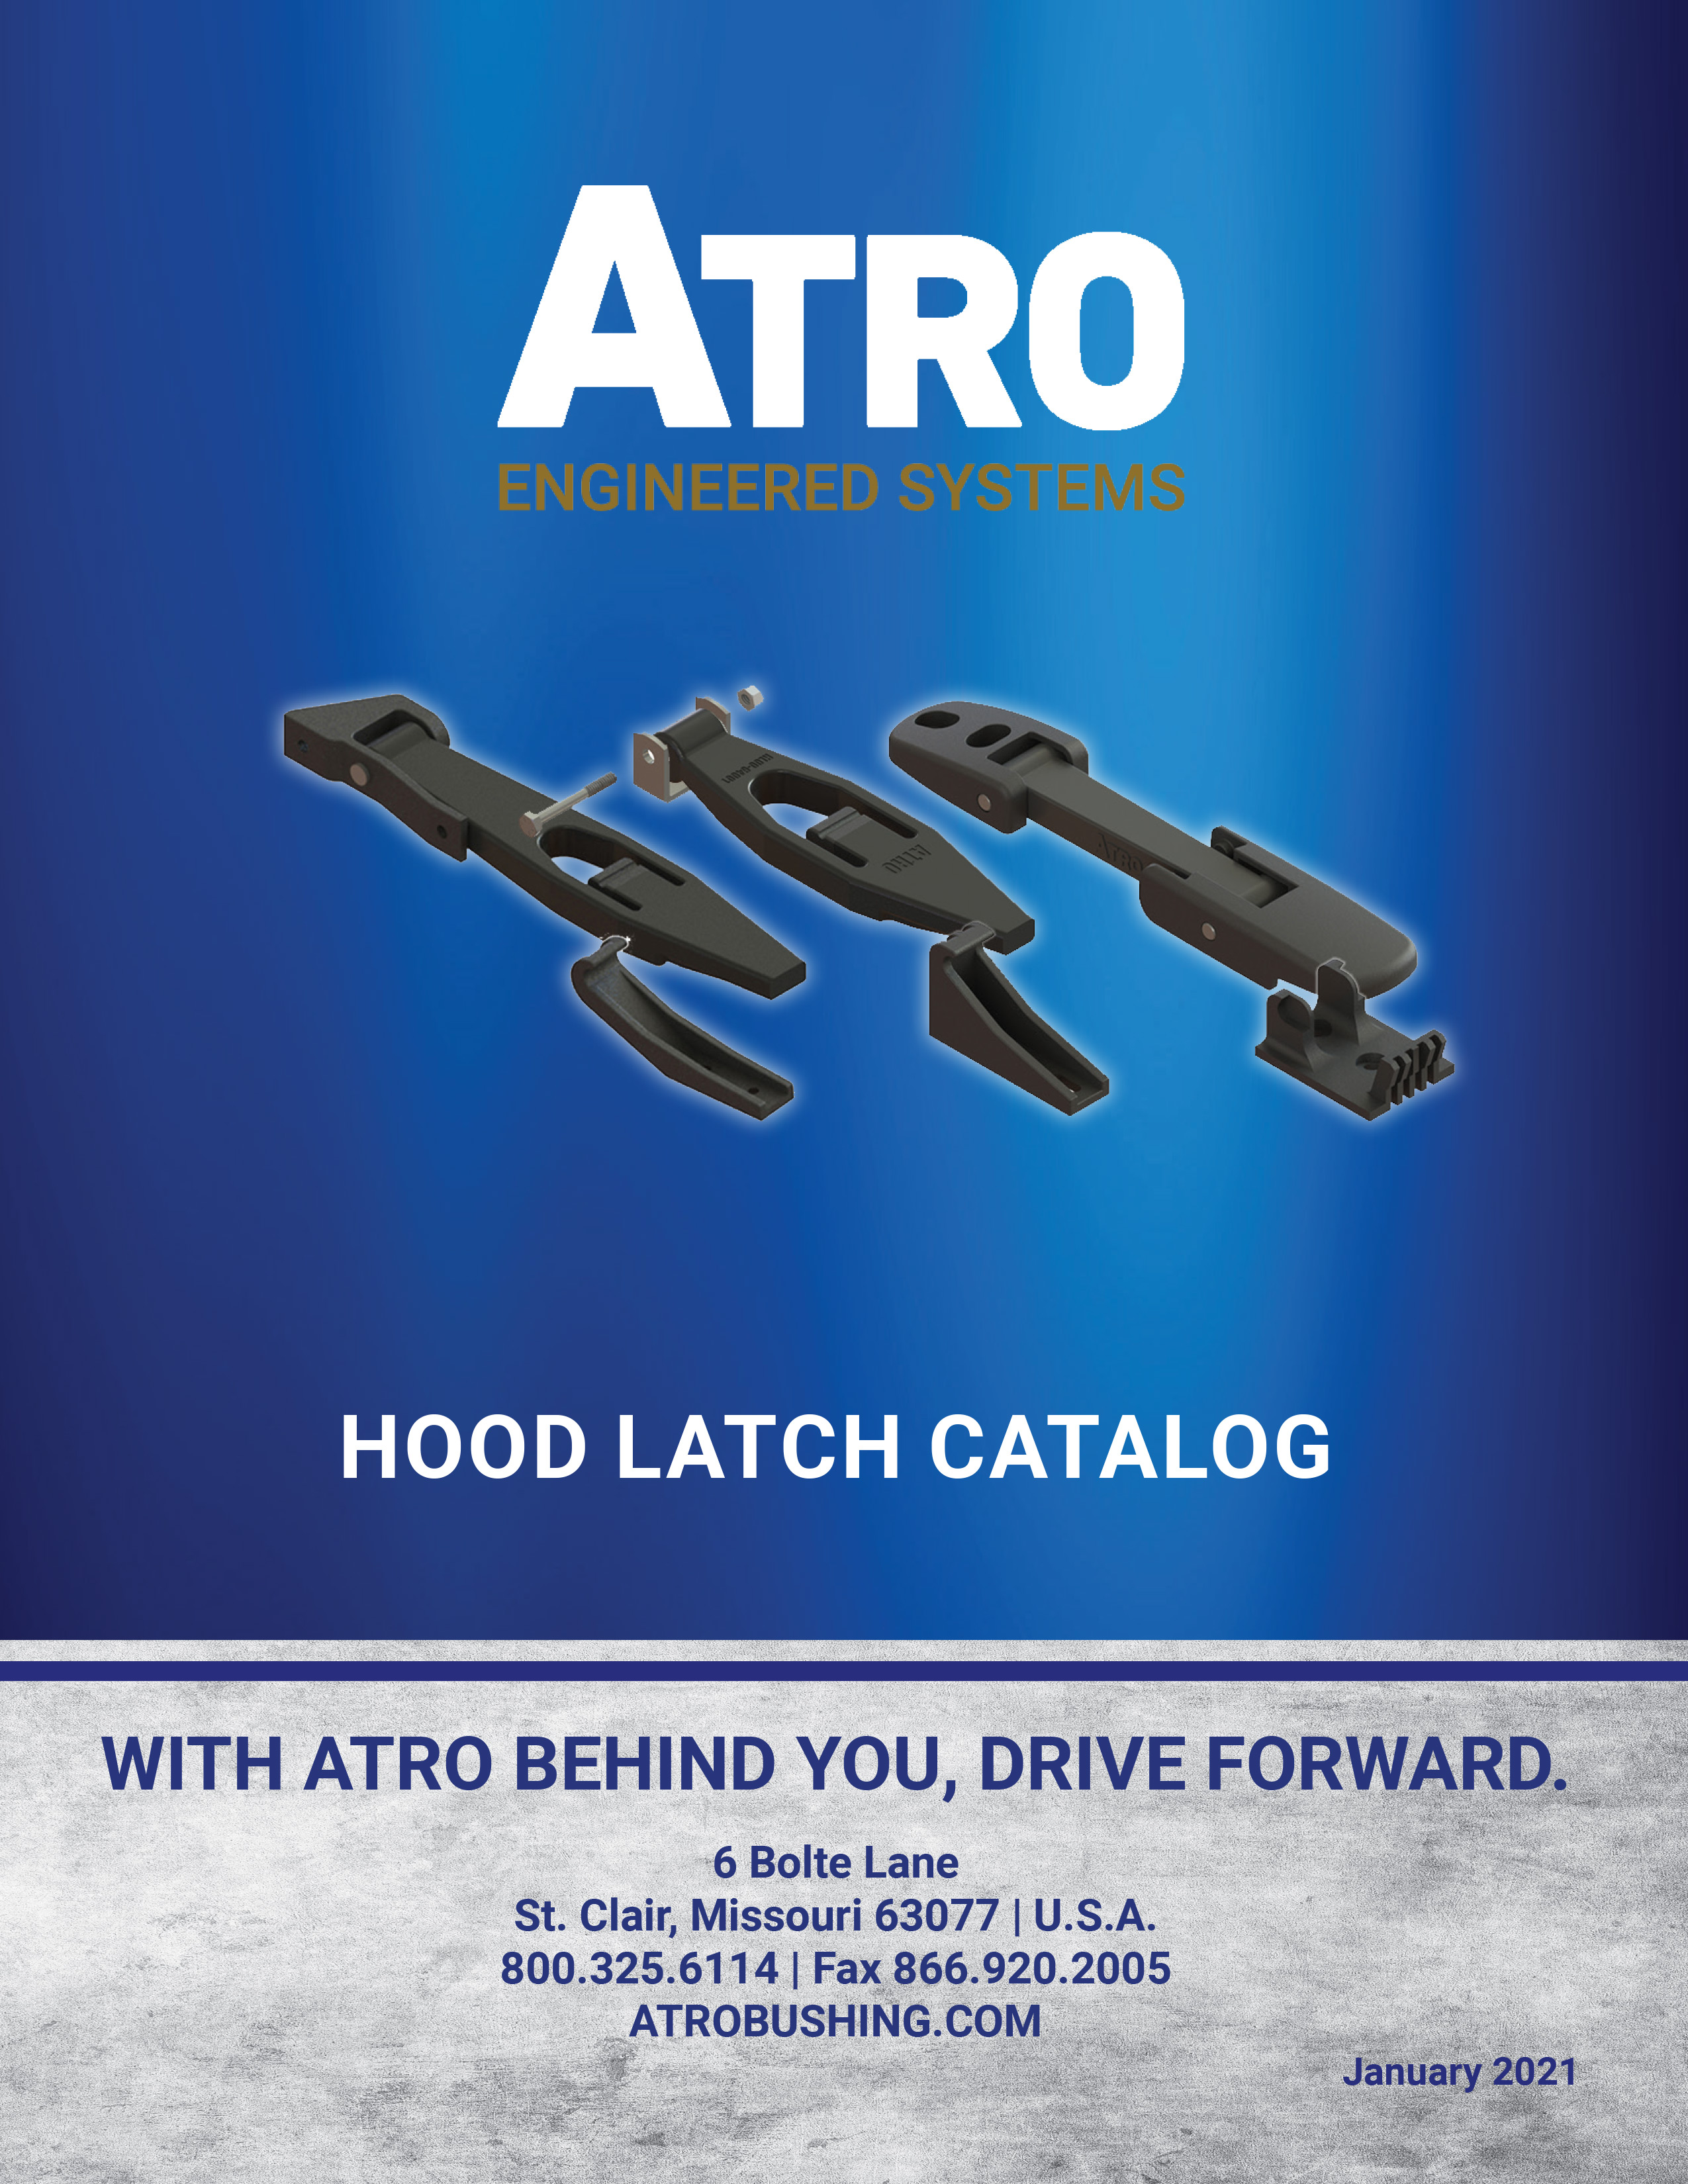 ATRO Hood Latch Catalog January 2021